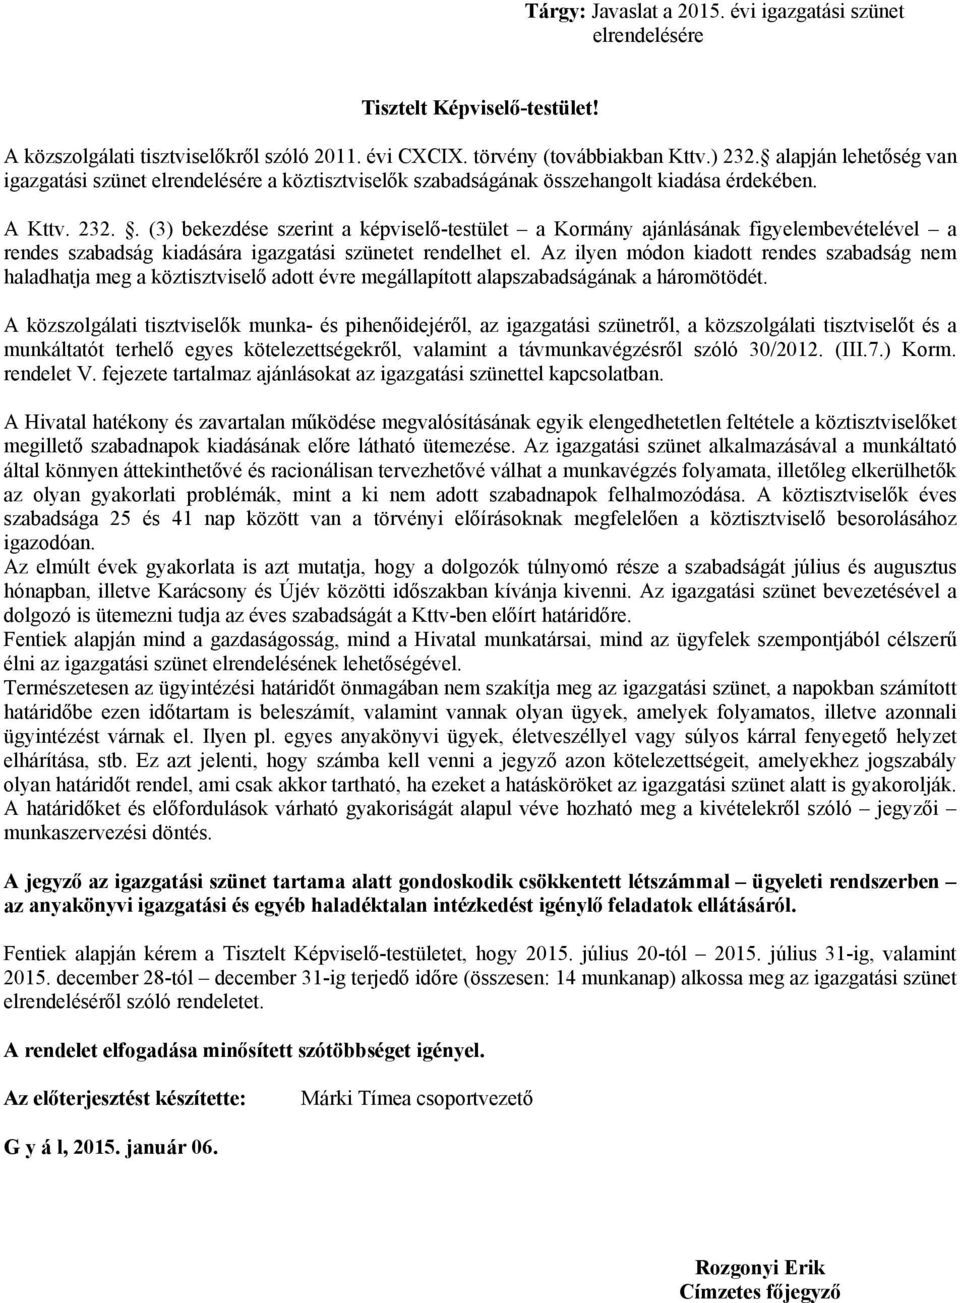 . (3) bekezdése szerint a képviselő-testület a Kormány ajánlásának figyelembevételével a rendes szabadság kiadására igazgatási szünetet rendelhet el.